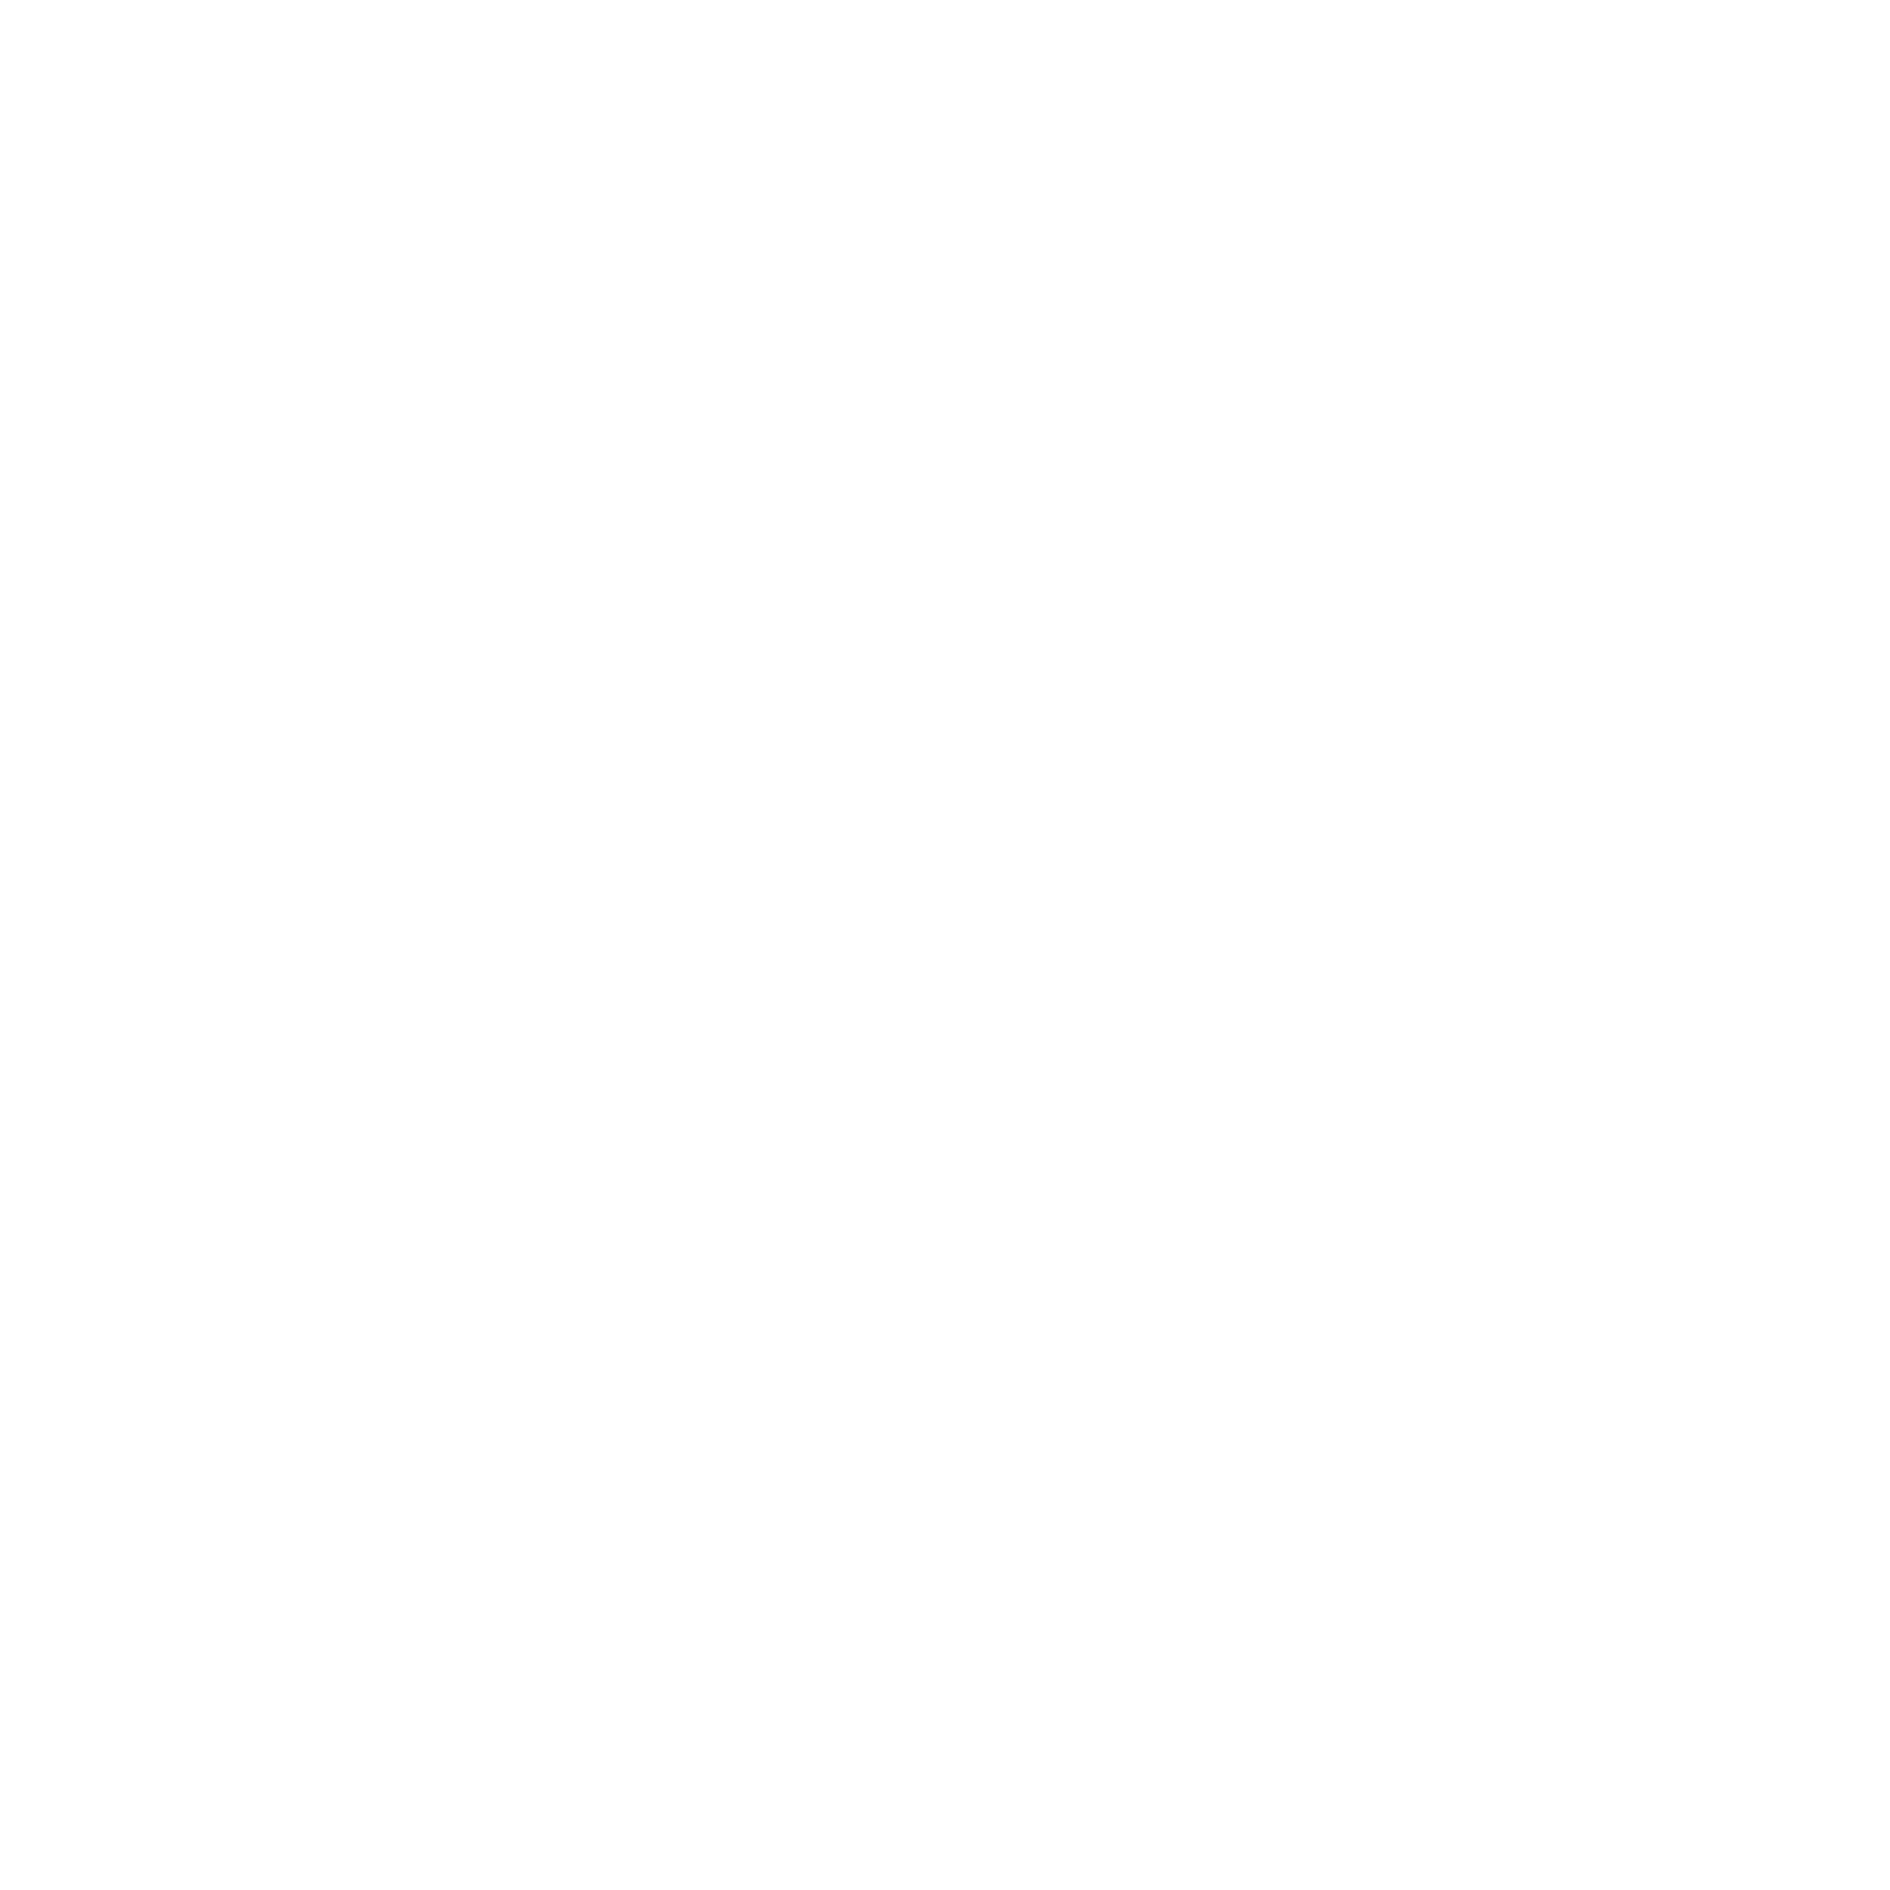 Illustration eines Hauses, in dessen Mitte ein Herz gezeichnet ist.